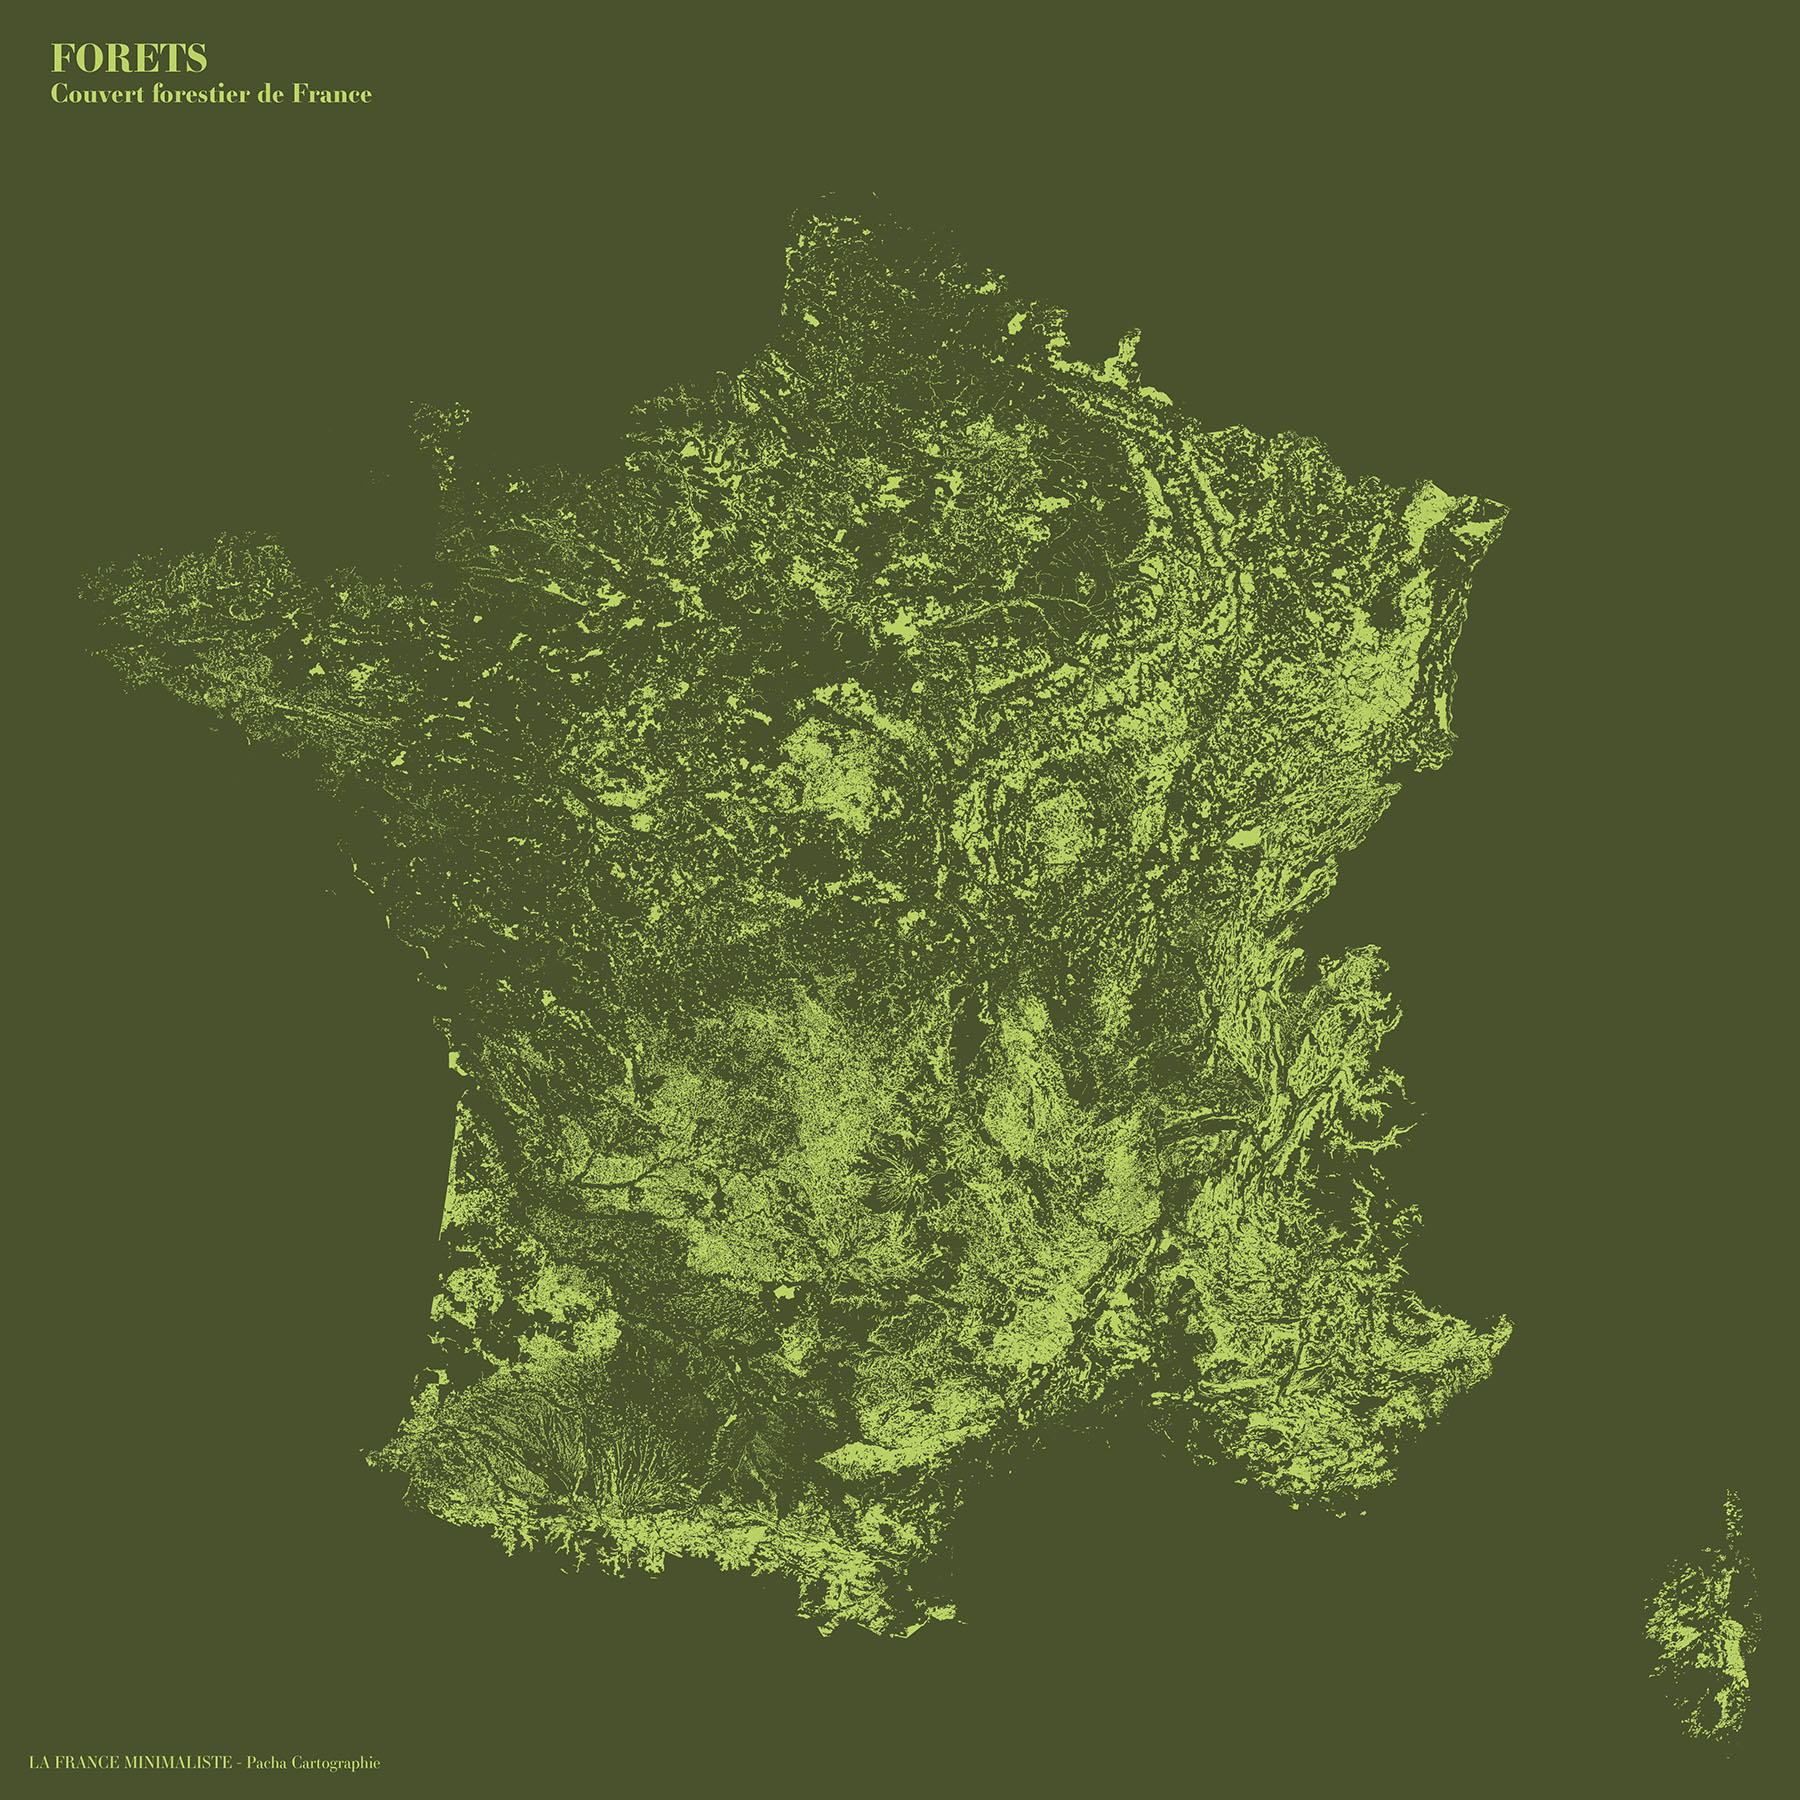 La France minimaliste - Forêts - Guillaume Sciaux - Cartographe professionnel